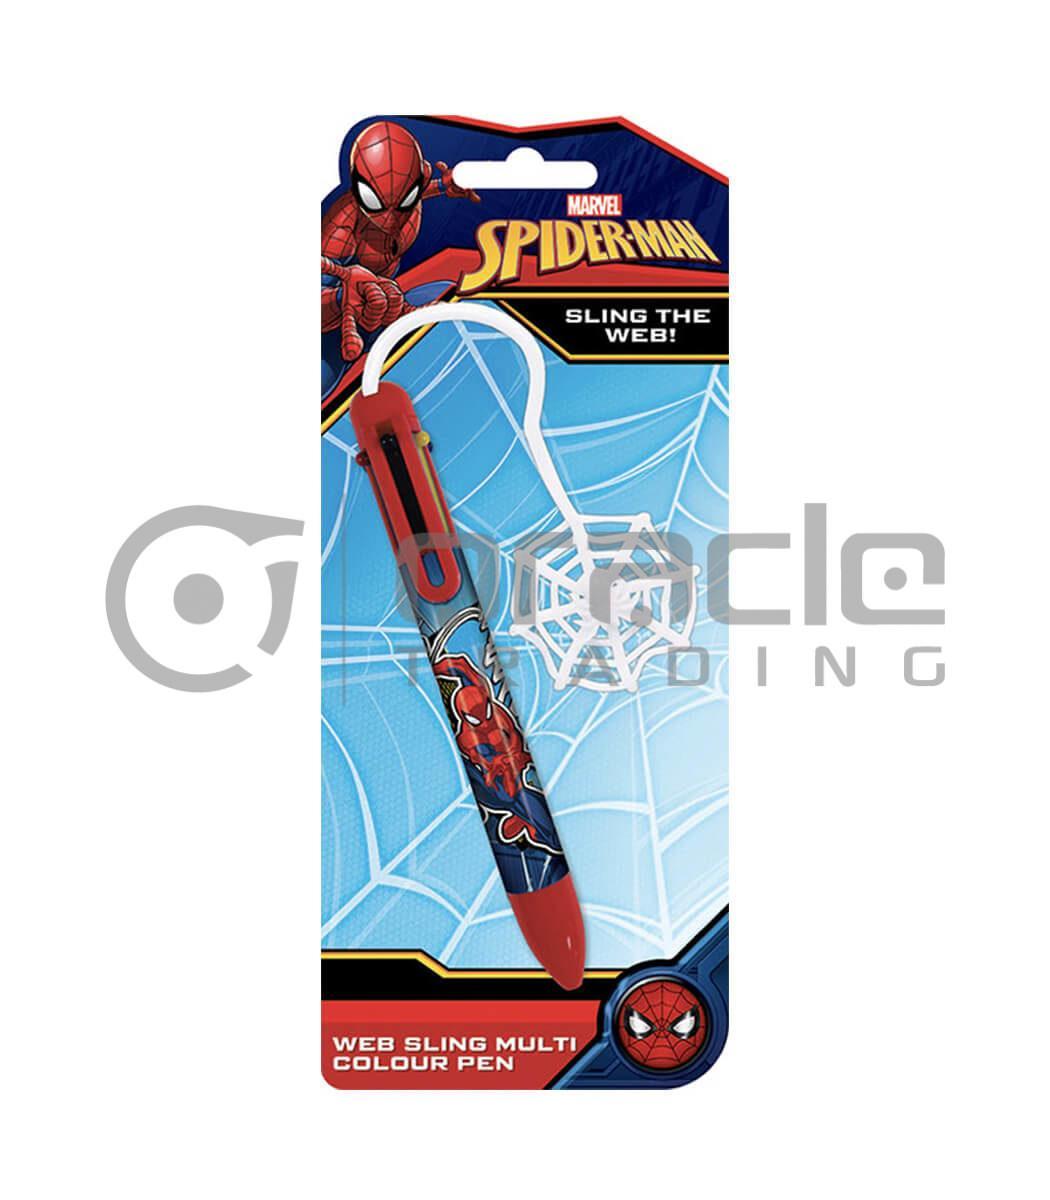 Spiderman Multicolour Pen